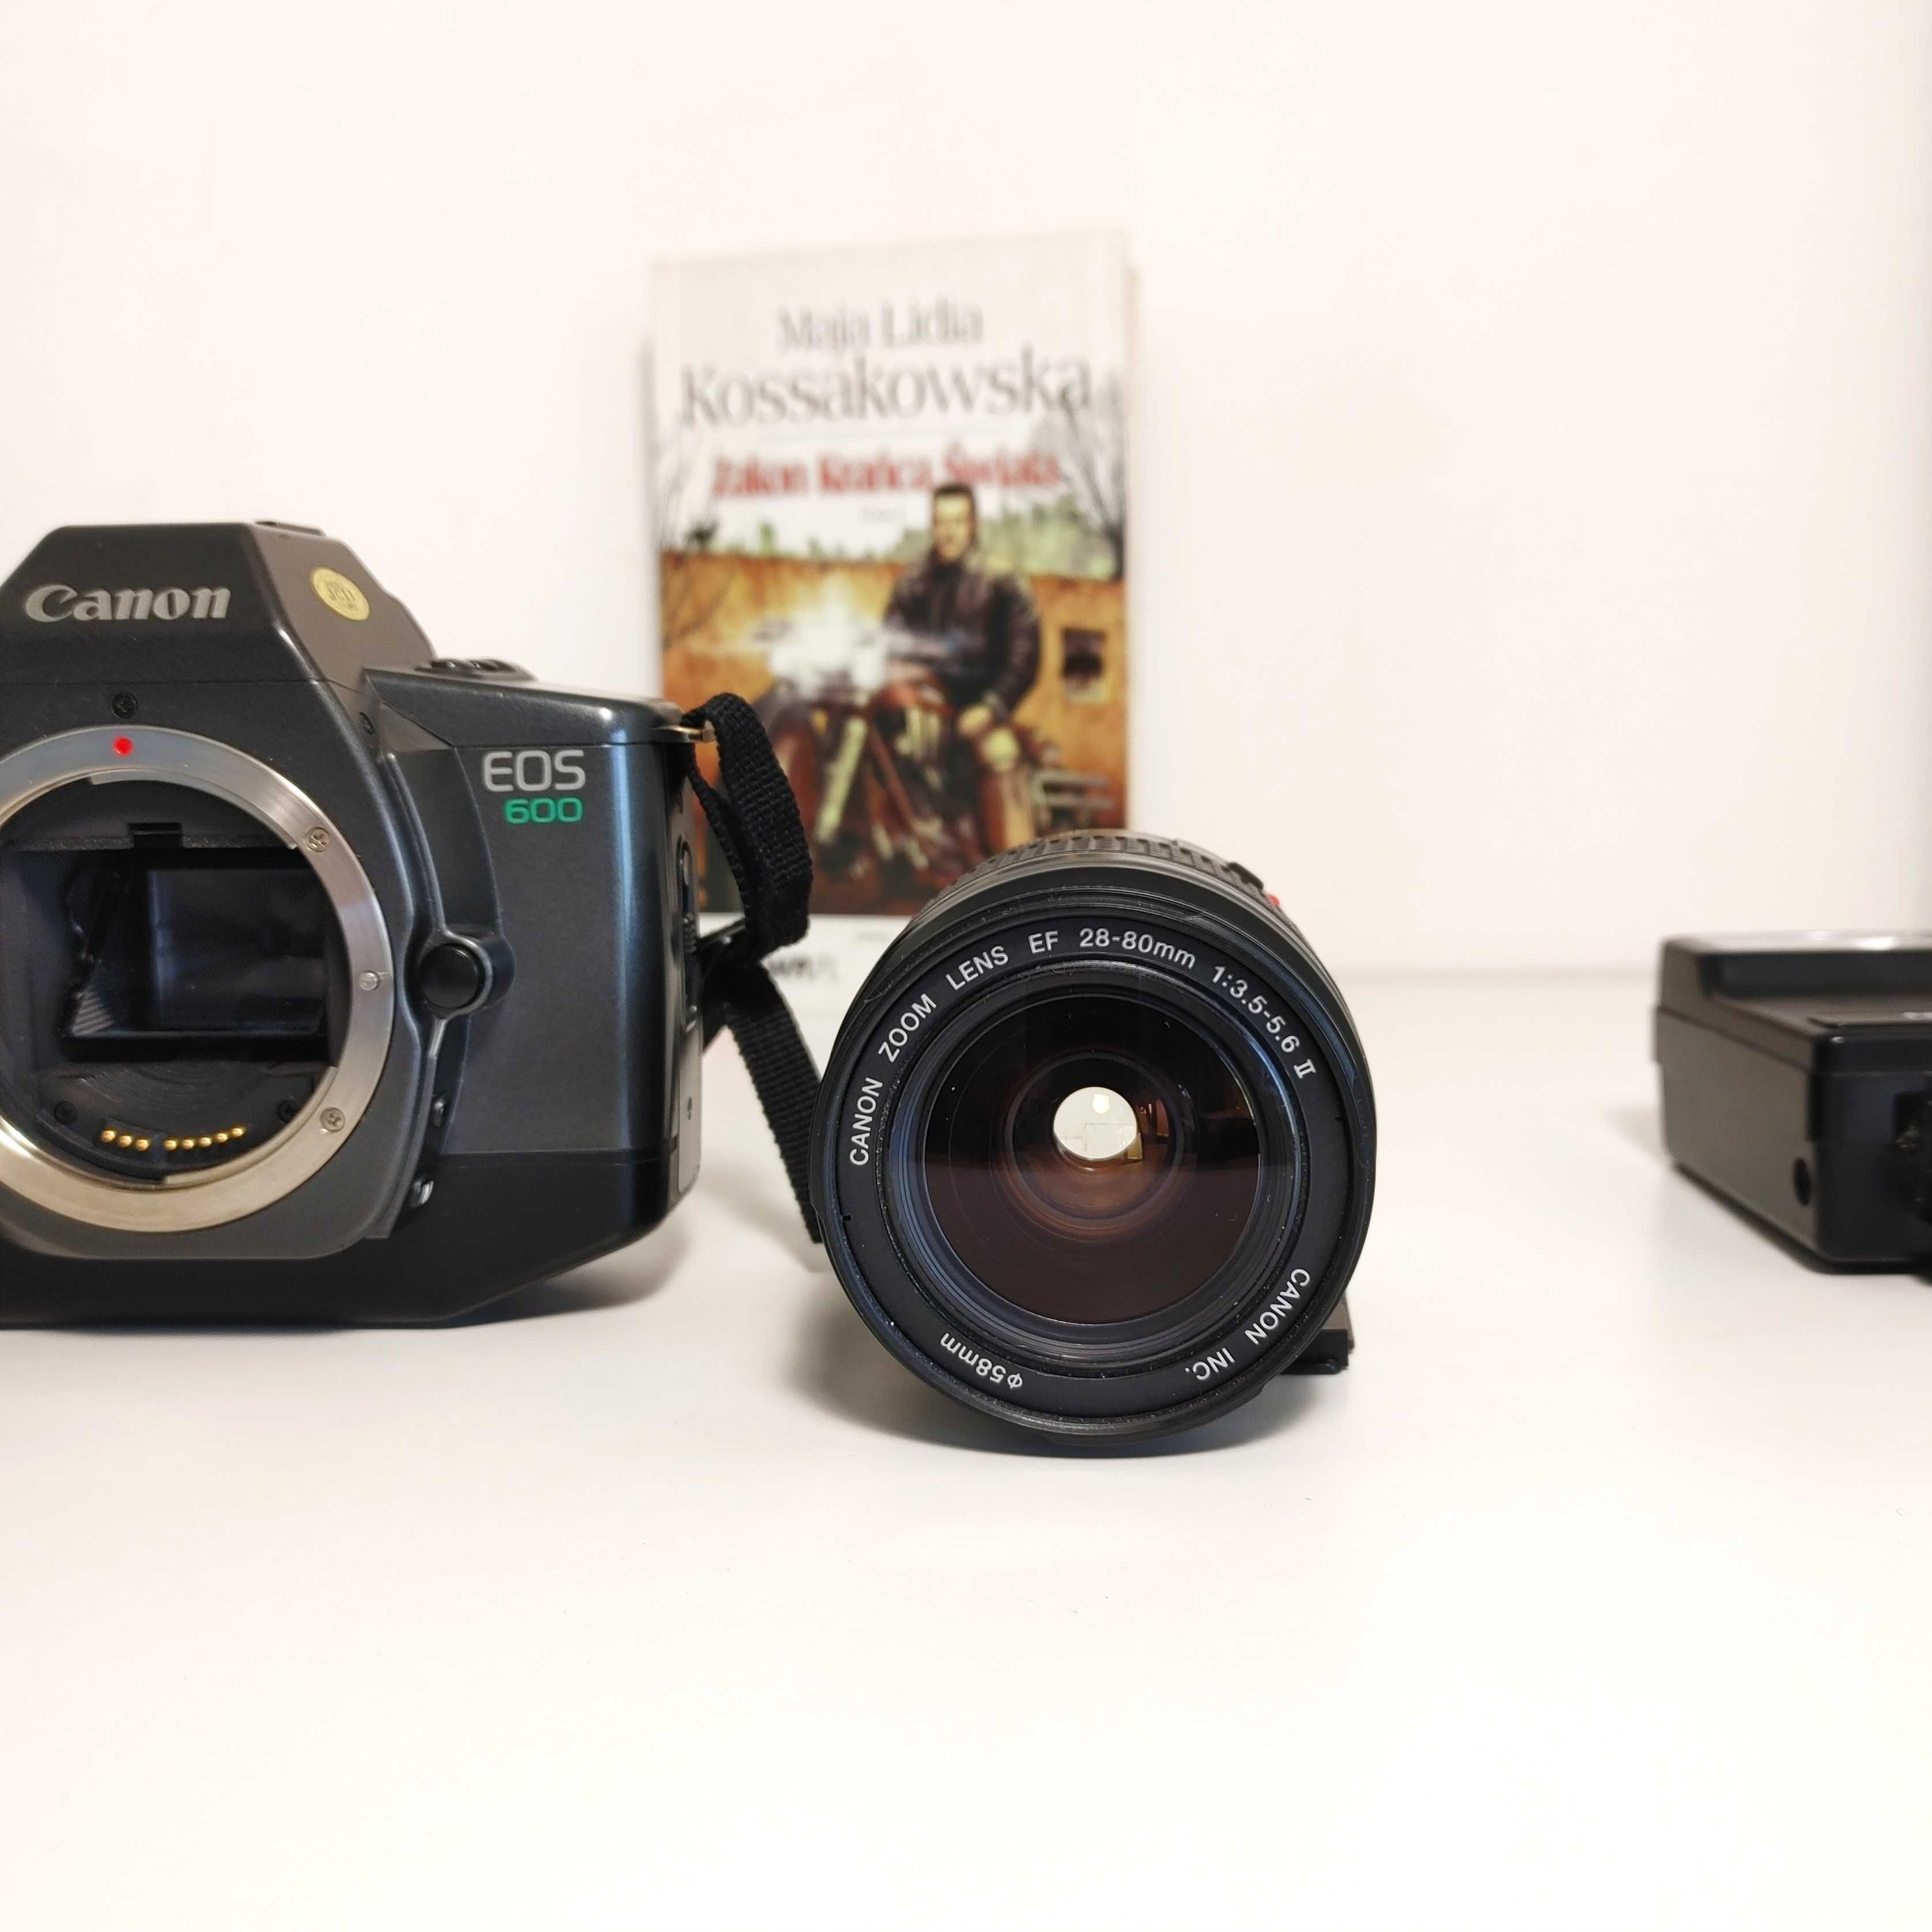 Ładna lustrzanka u CANON Eos 600 QD Canon Zoom 28-80 mm lampą błyskową